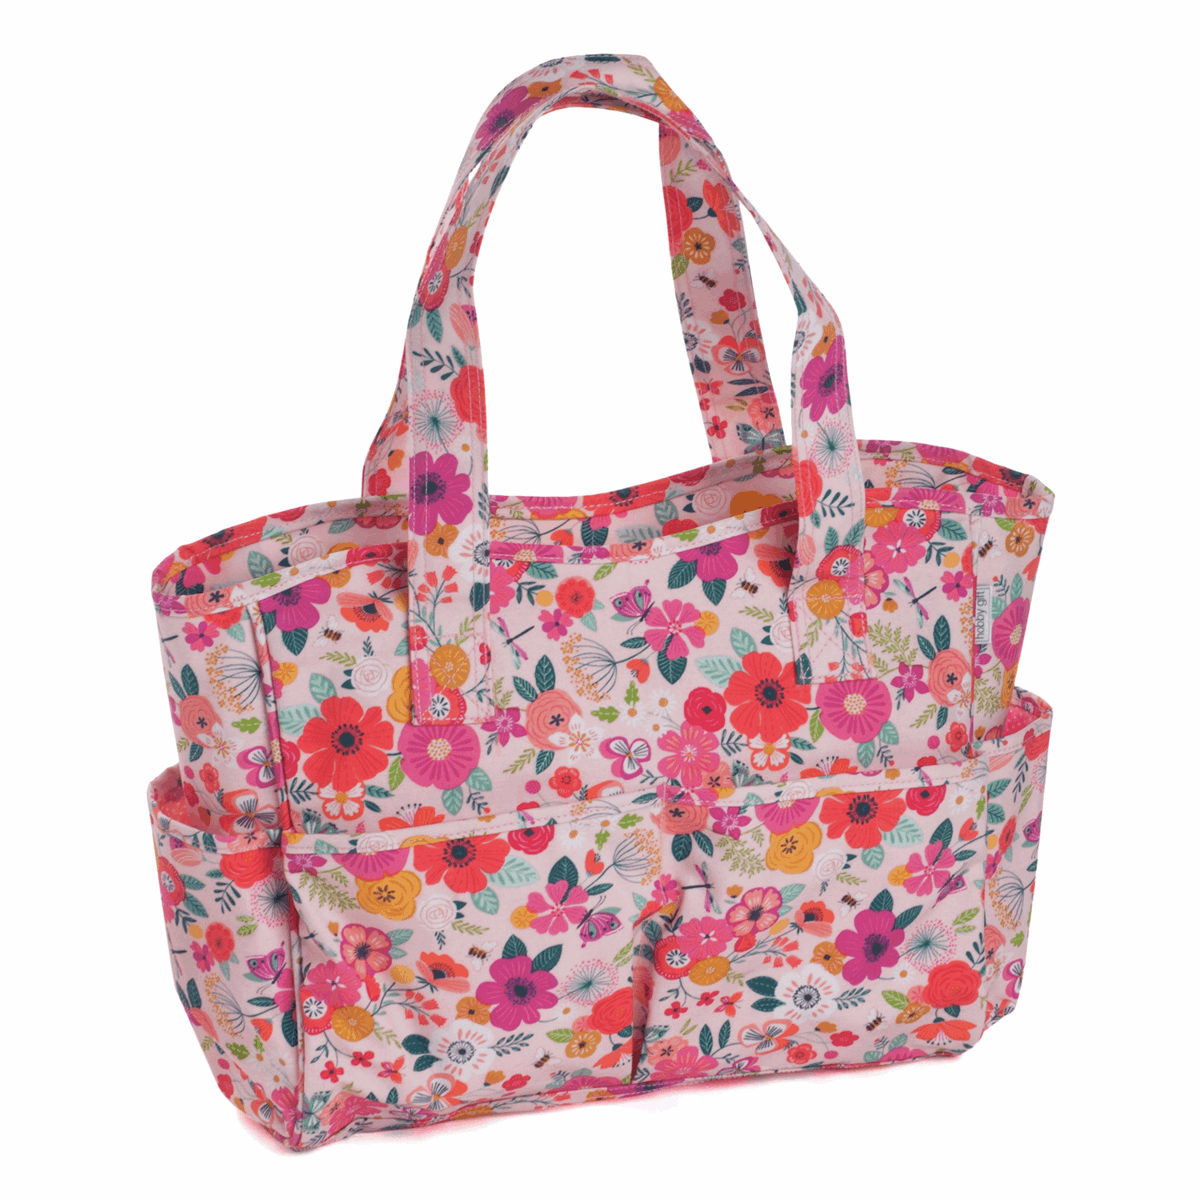 Deluxe Craft Bag - Pink Floral Garden (Matt PVC)